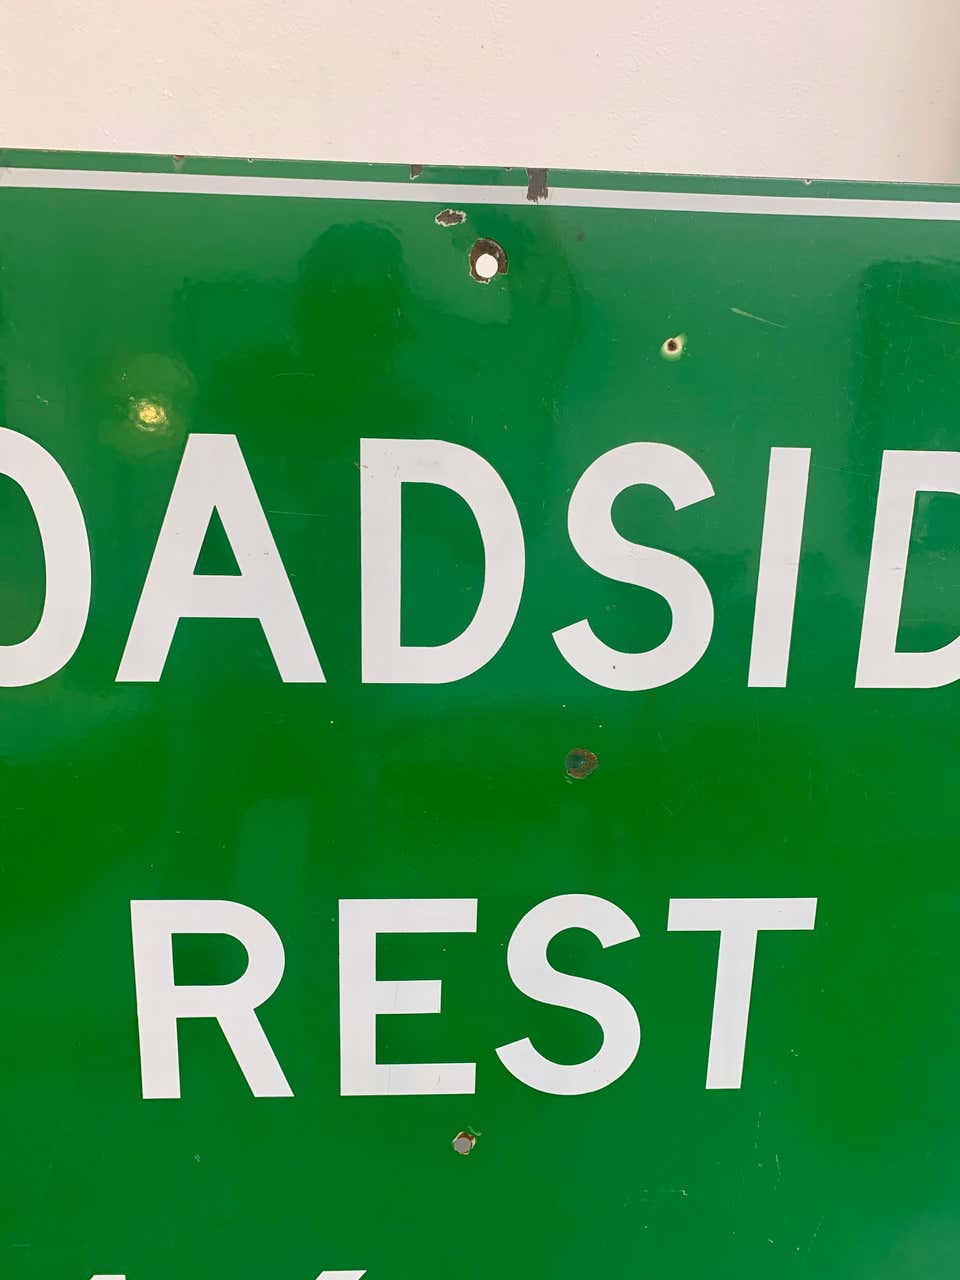 Monumental Porcelain Roadside Rest Highway Sign